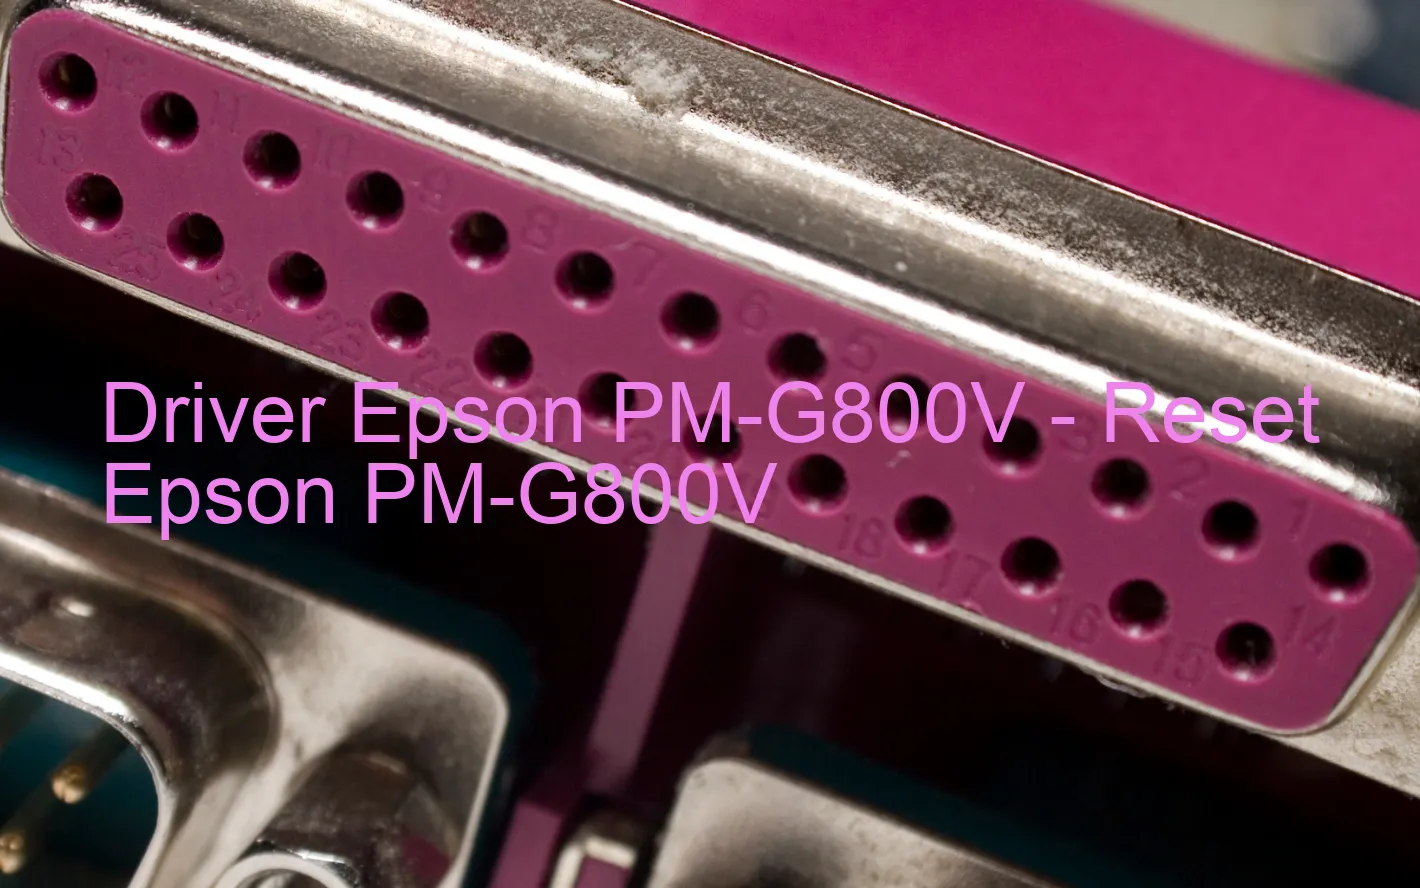 Epson PM-G800Vのドライバー、Epson PM-G800Vのリセットソフトウェア